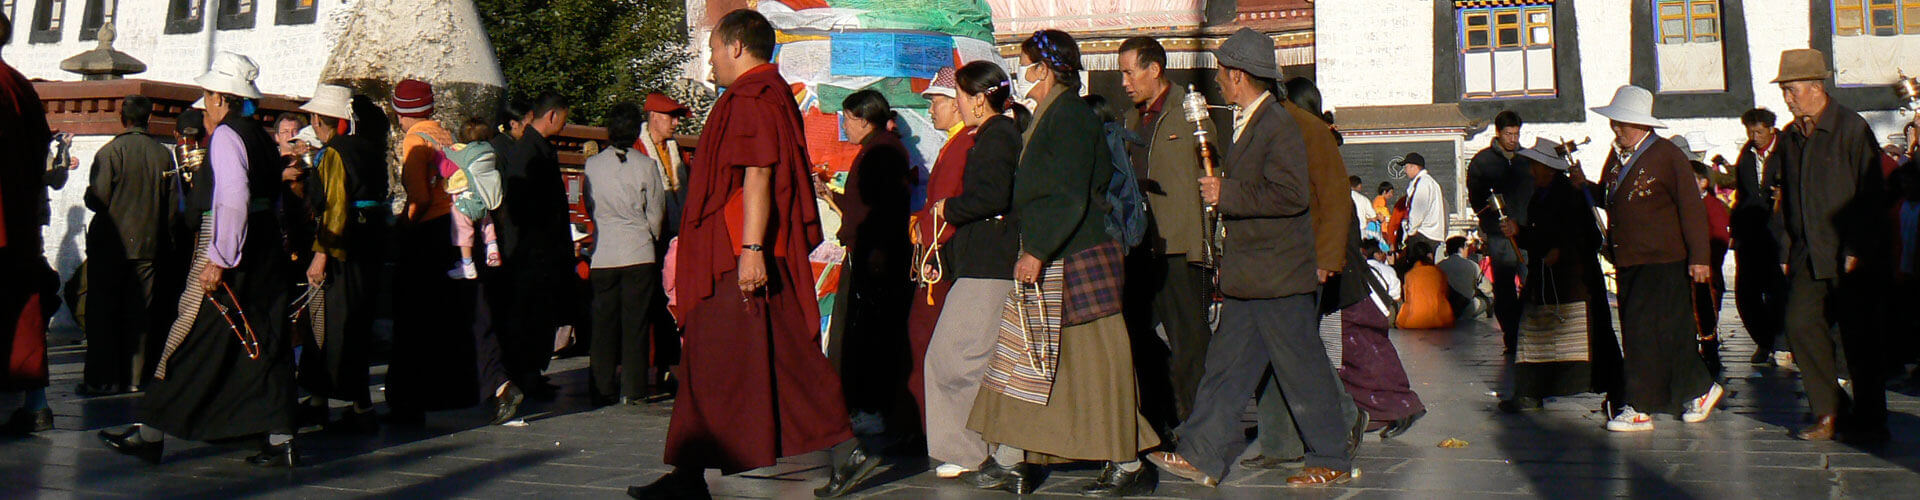 Lhasa en Omringende kloosters